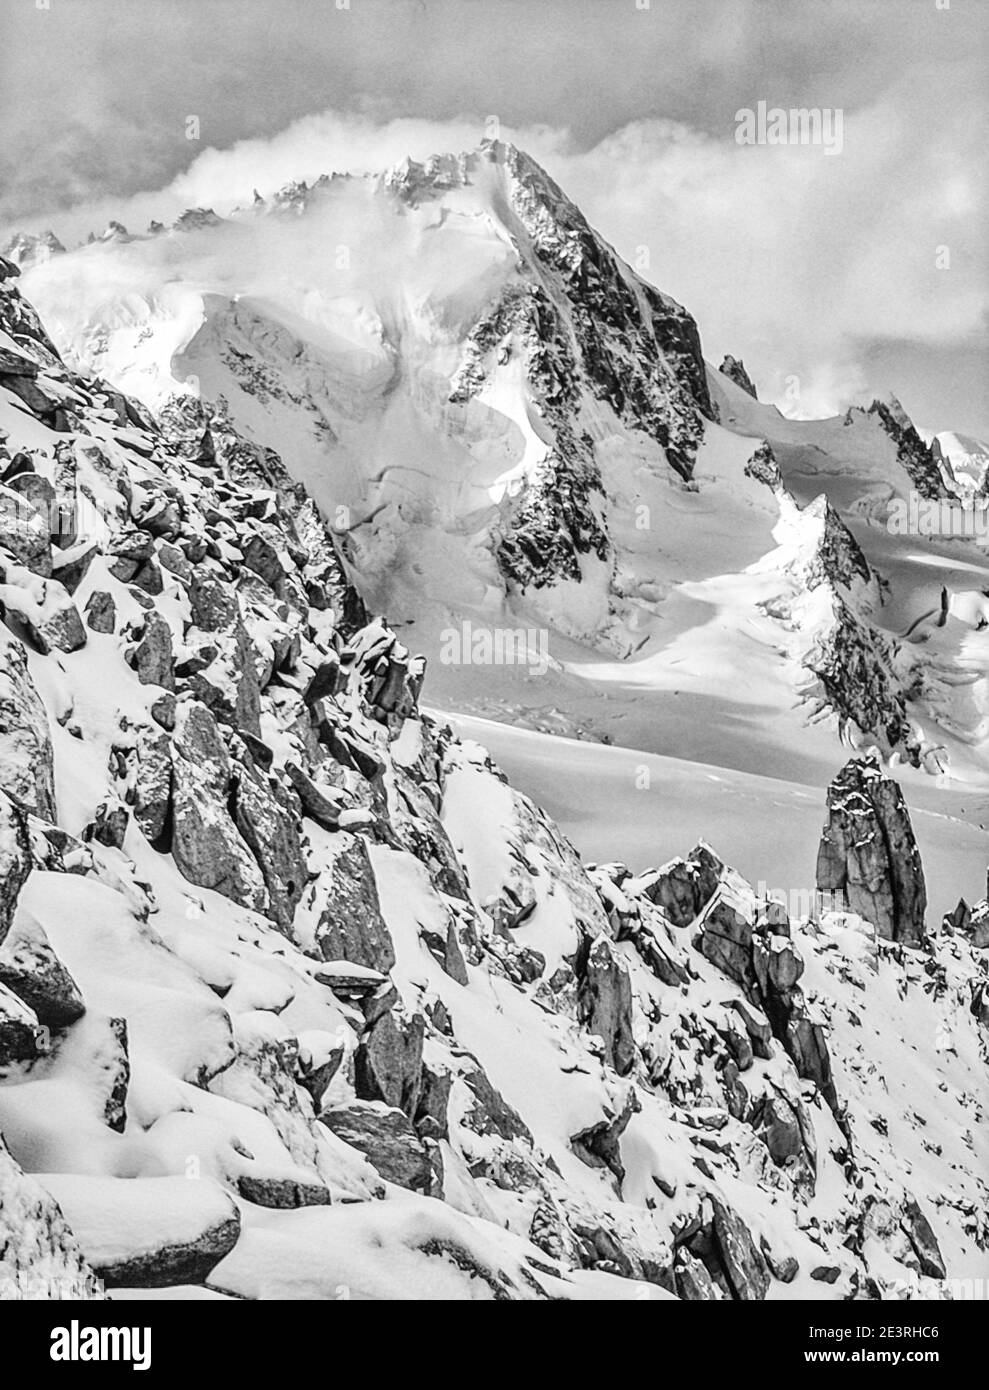 Francia. Favoloso scenario alpino in monocromia di Aiguille du Chardonnet nelle montagne del Monte Bianco vicino alla località turistica di Chamonix nelle Alpi francesi. Foto Stock